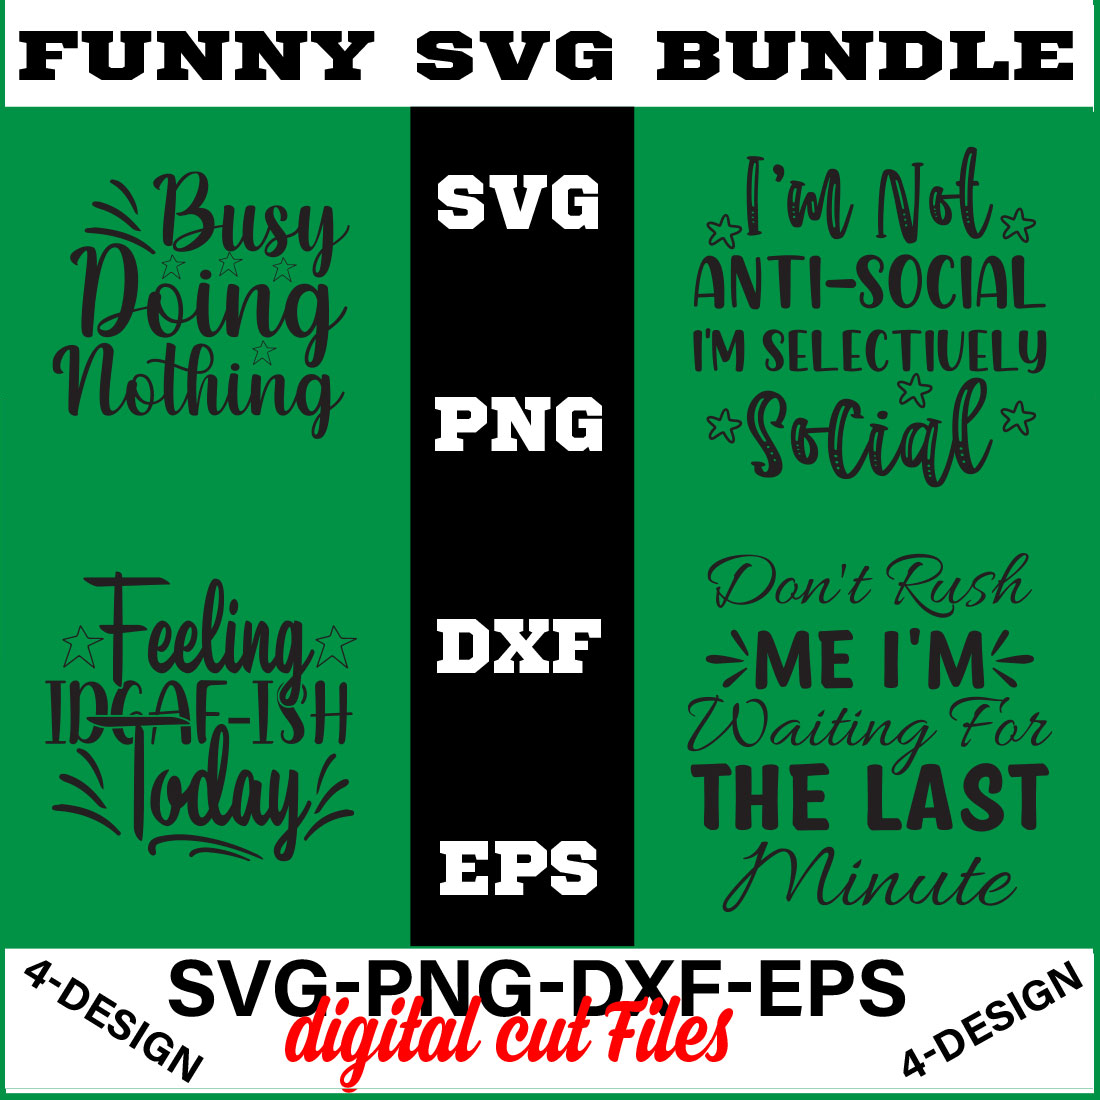 Funny Svg T-shirt Design Bundle Volume-05 cover image.